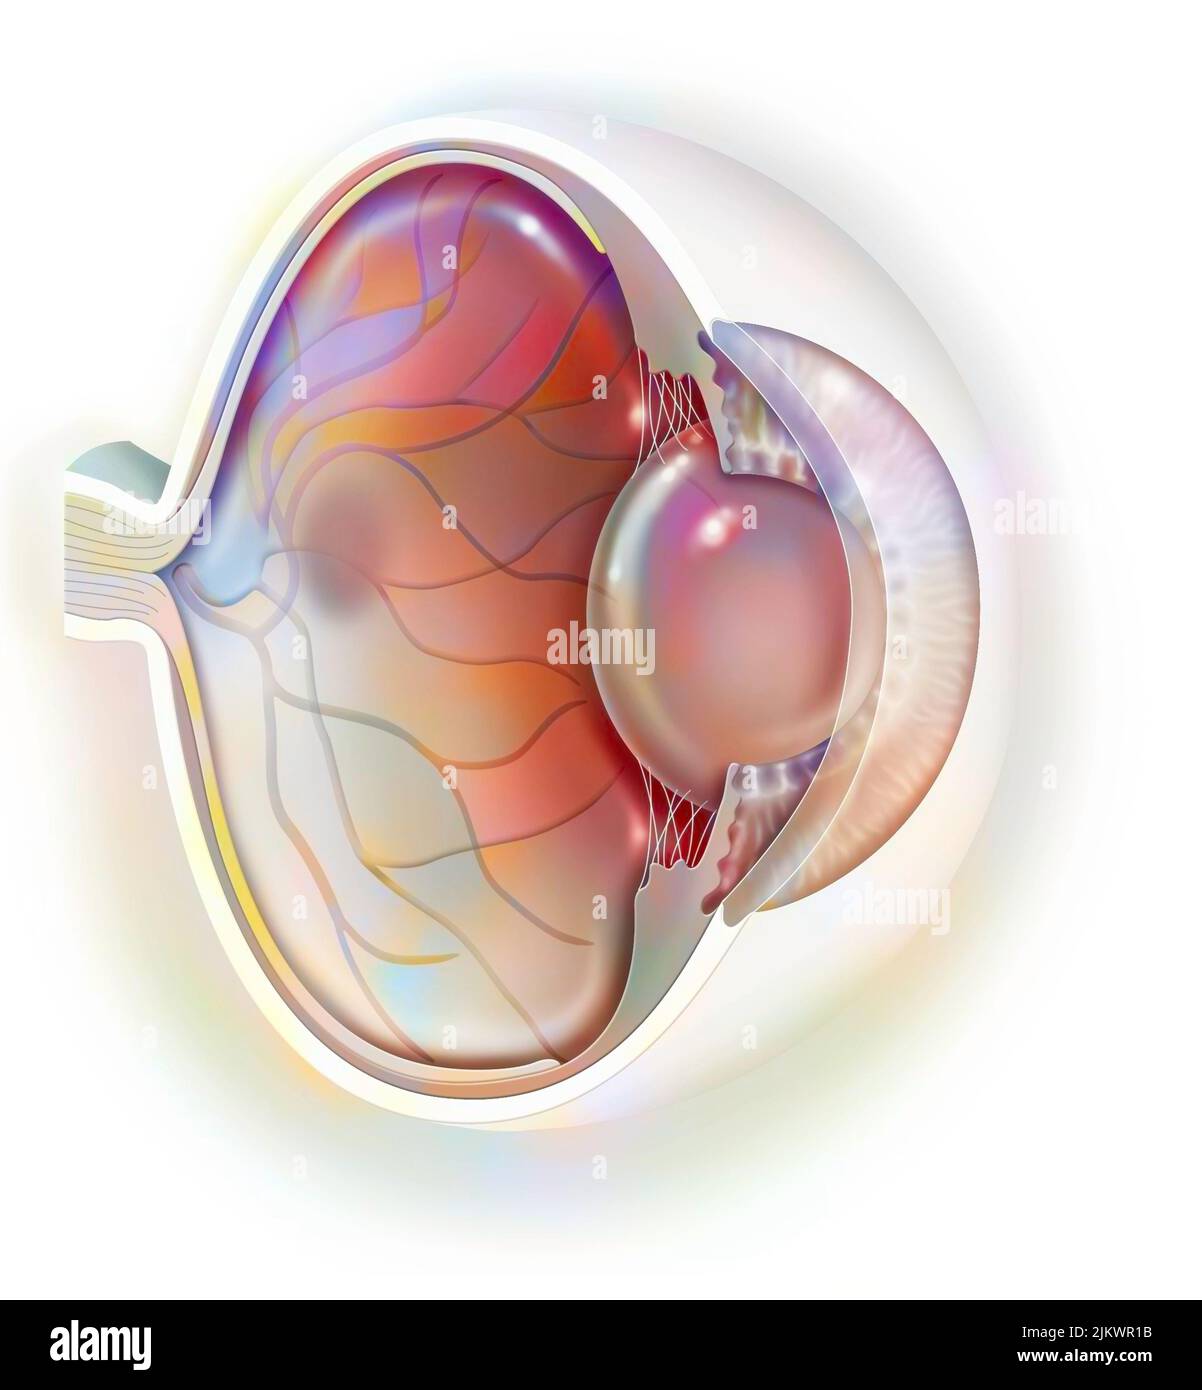 Vista sagittale dell'anatomia dell'occhio che mostra lente, retina, cornea, iride, coroide. Foto Stock